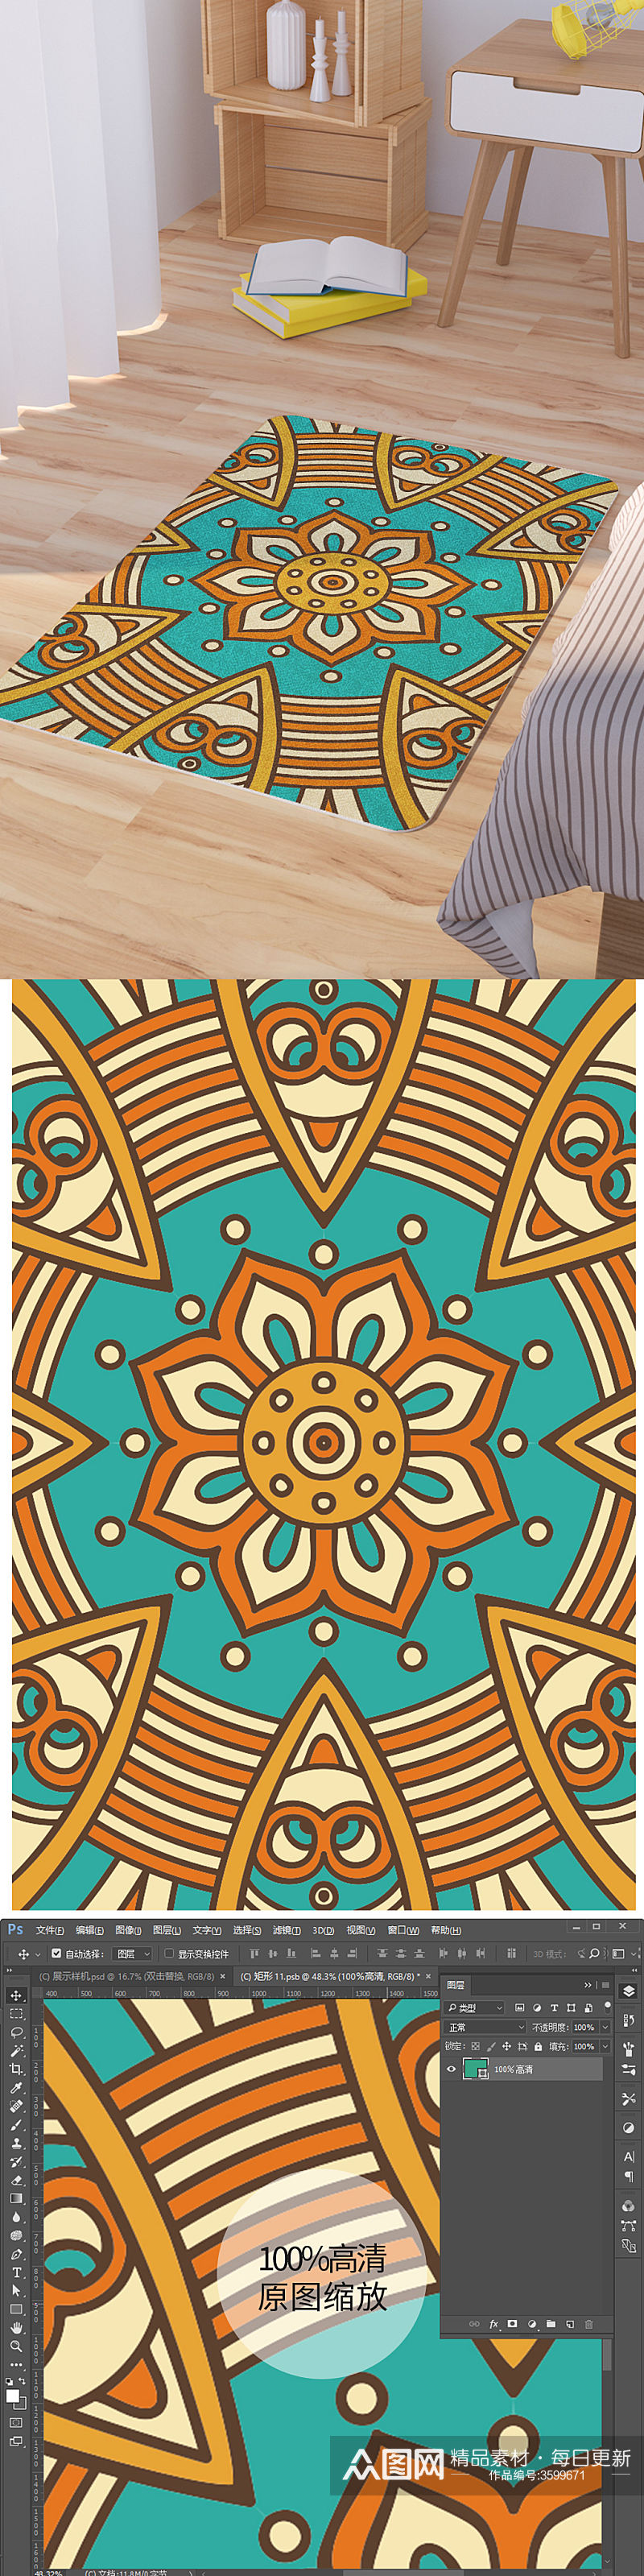 民族风手绘曼陀罗花纹脚垫地毯图案素材